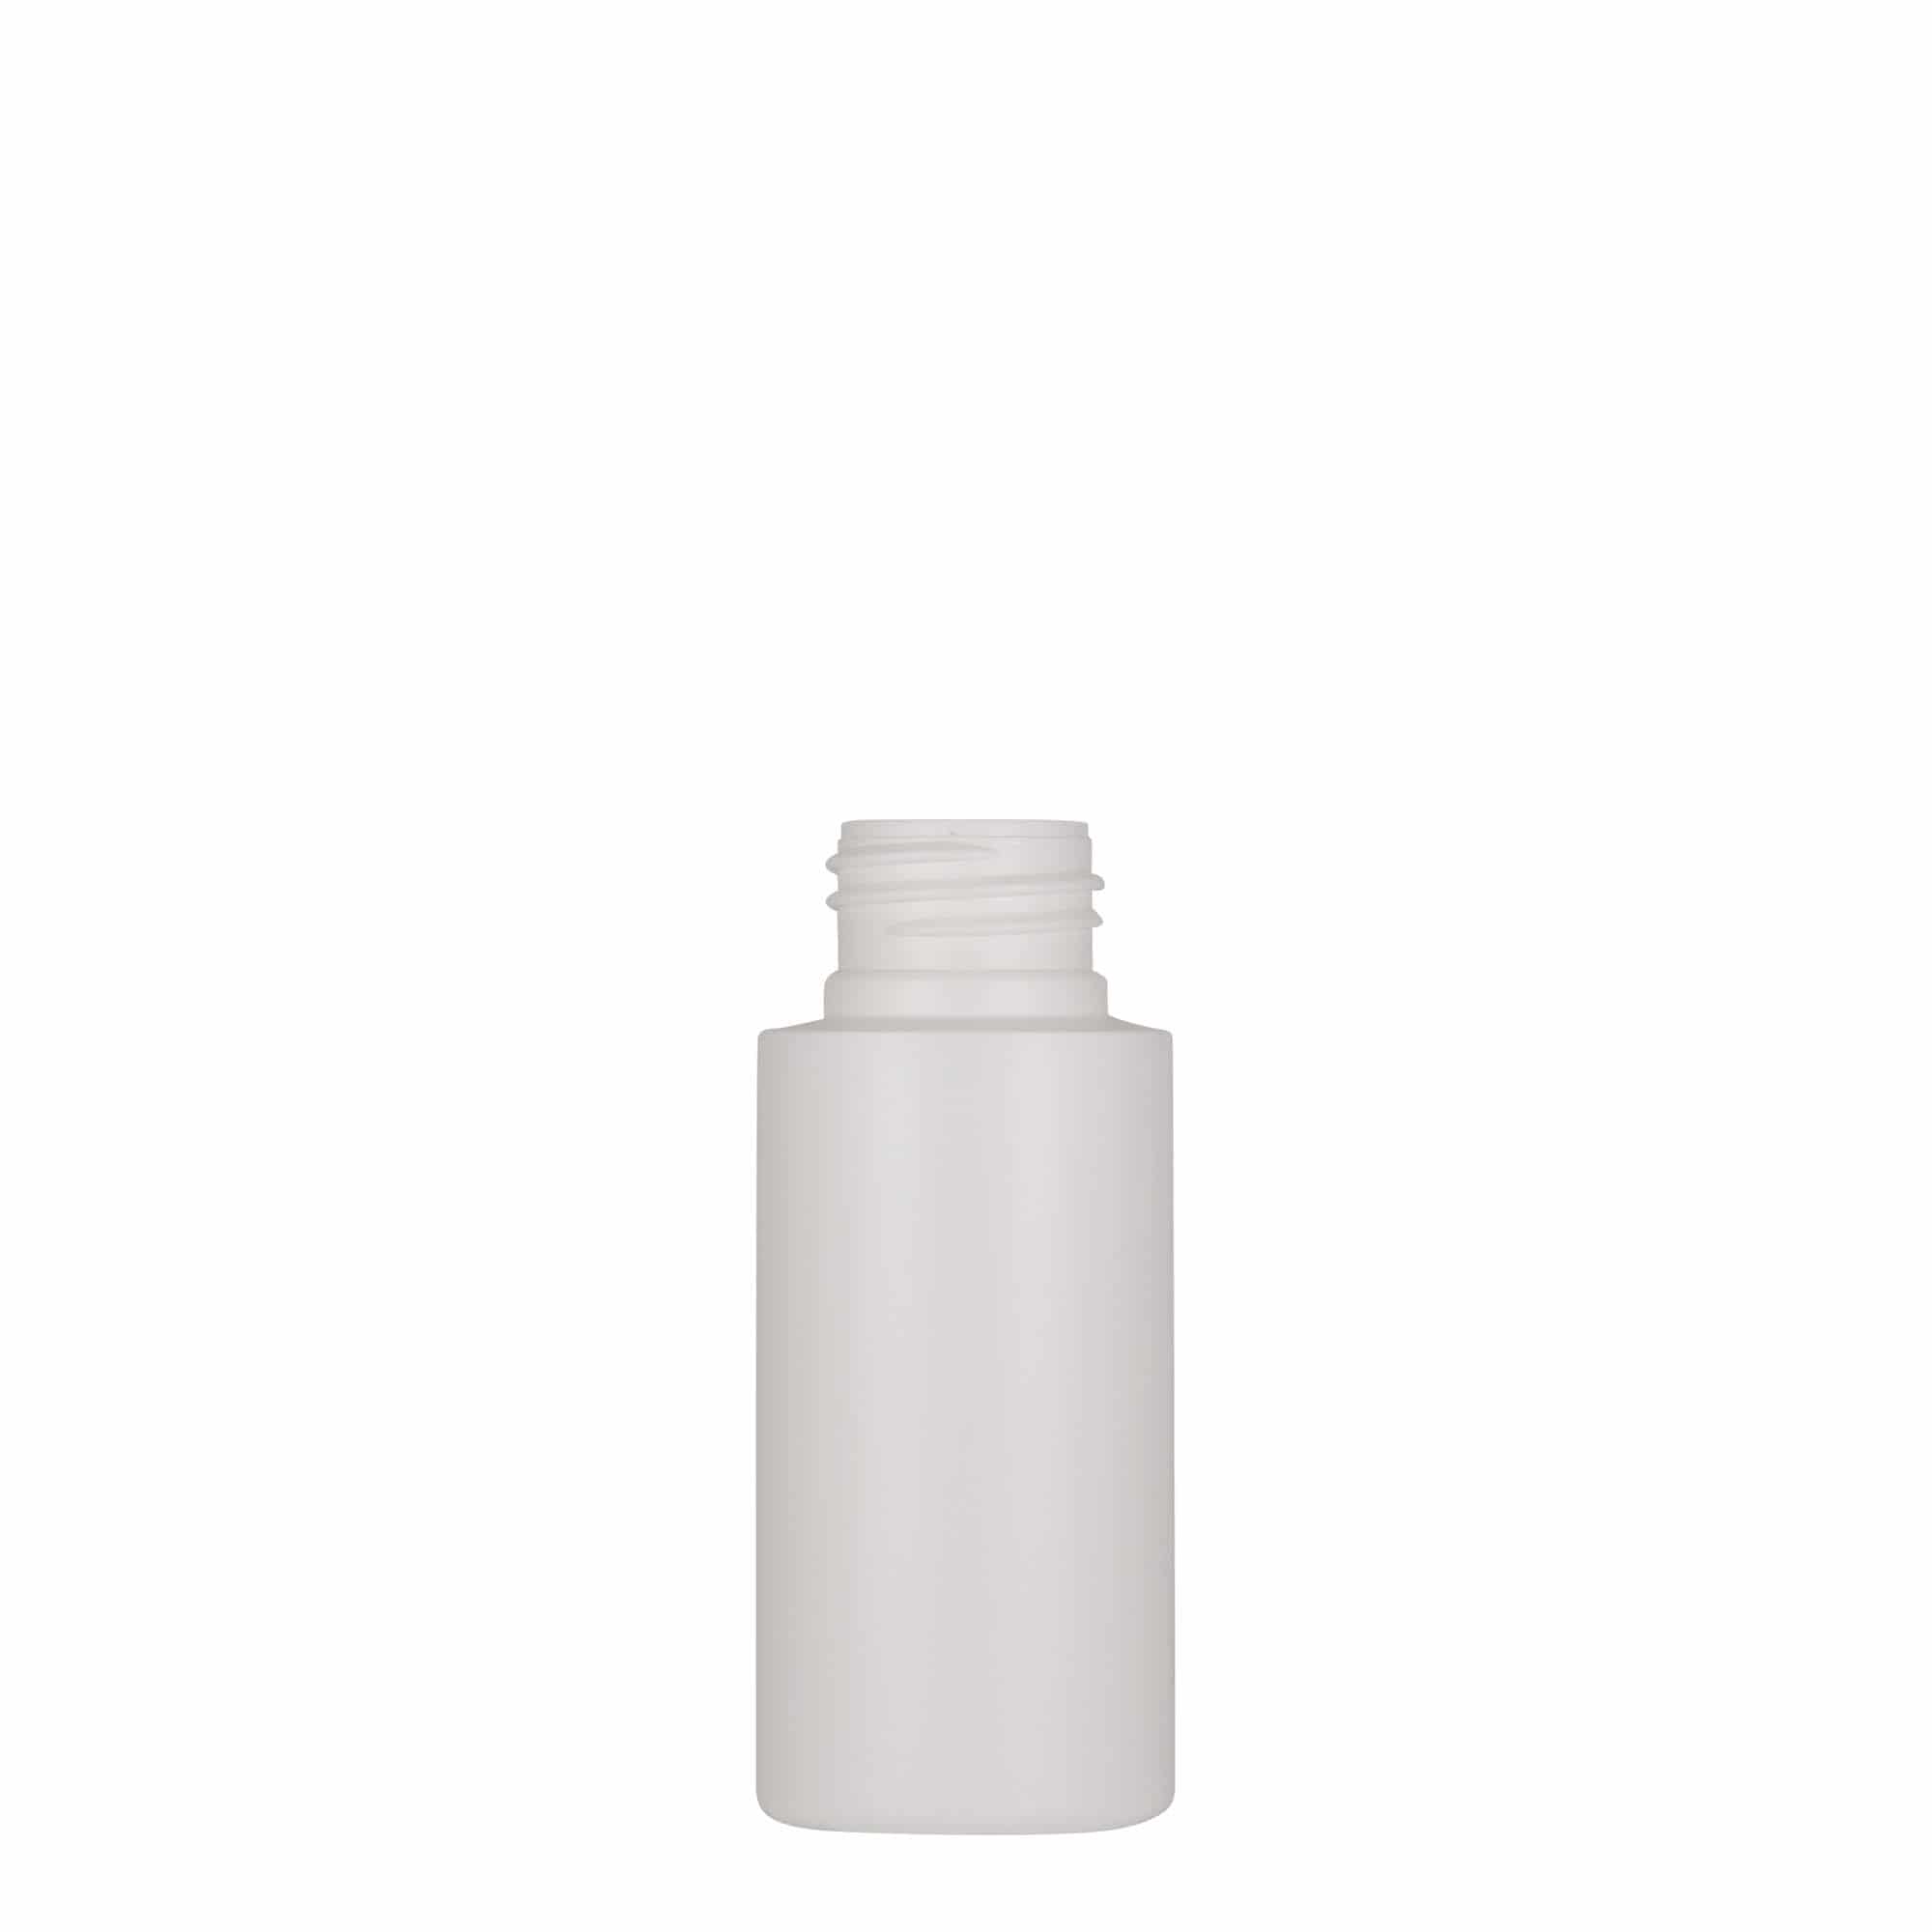 50 ml butelka z tworzywa sztucznego 'Pipe', Green HDPE, kolor biały, zamknięcie: GPI 24/410